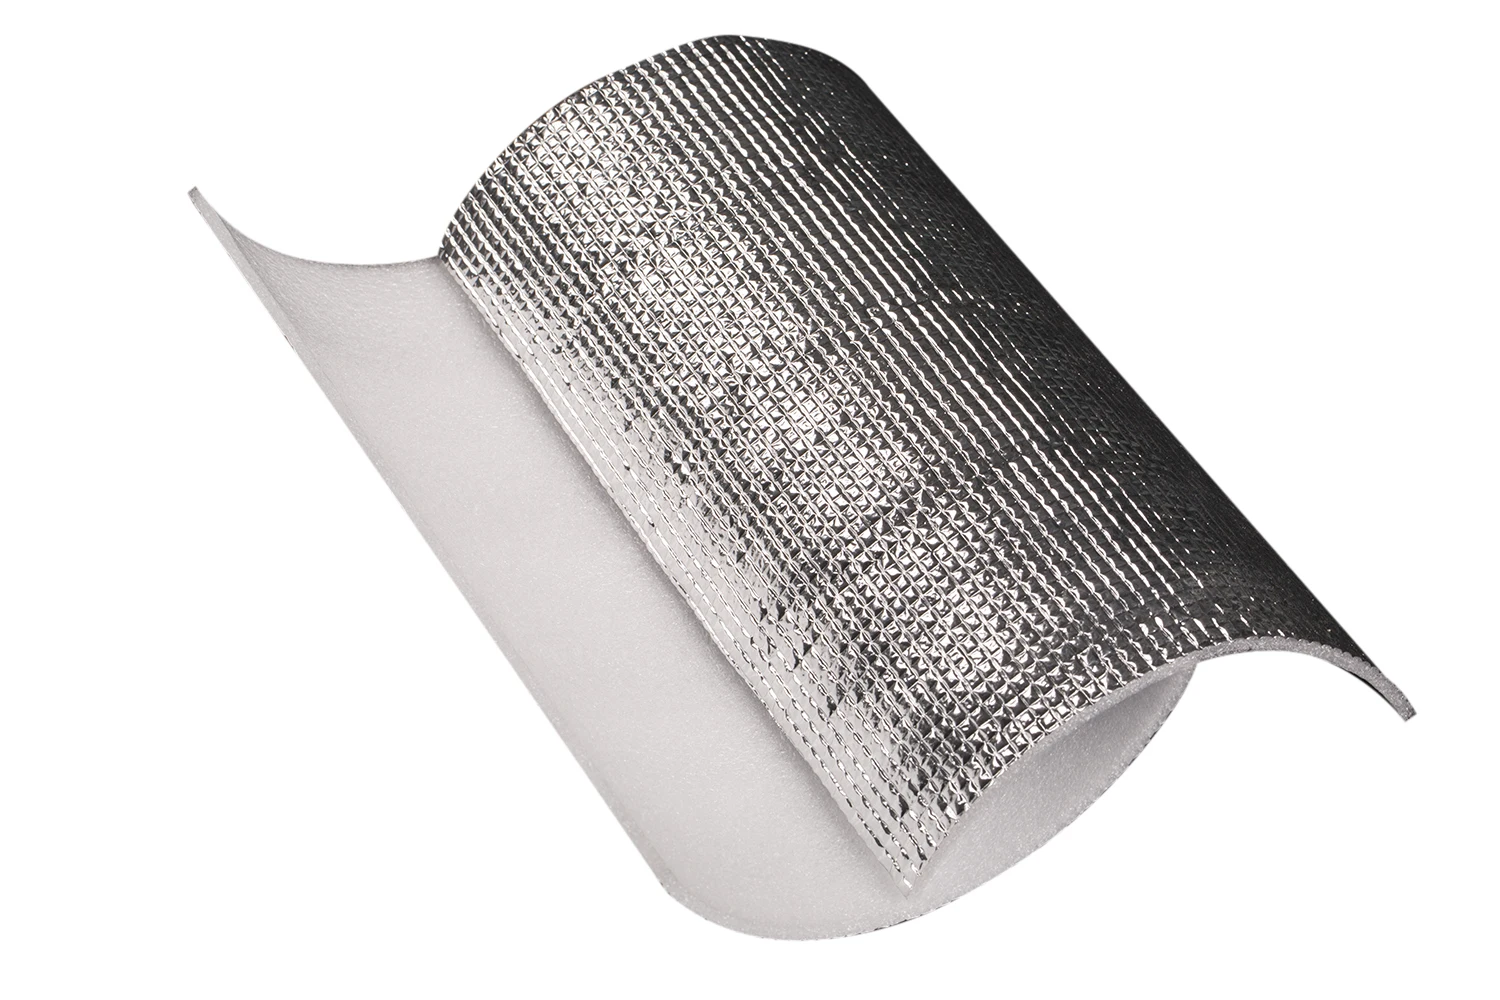 
Pure Aluminum Foil Sound Insulator Foam Heat Insulation Materials 